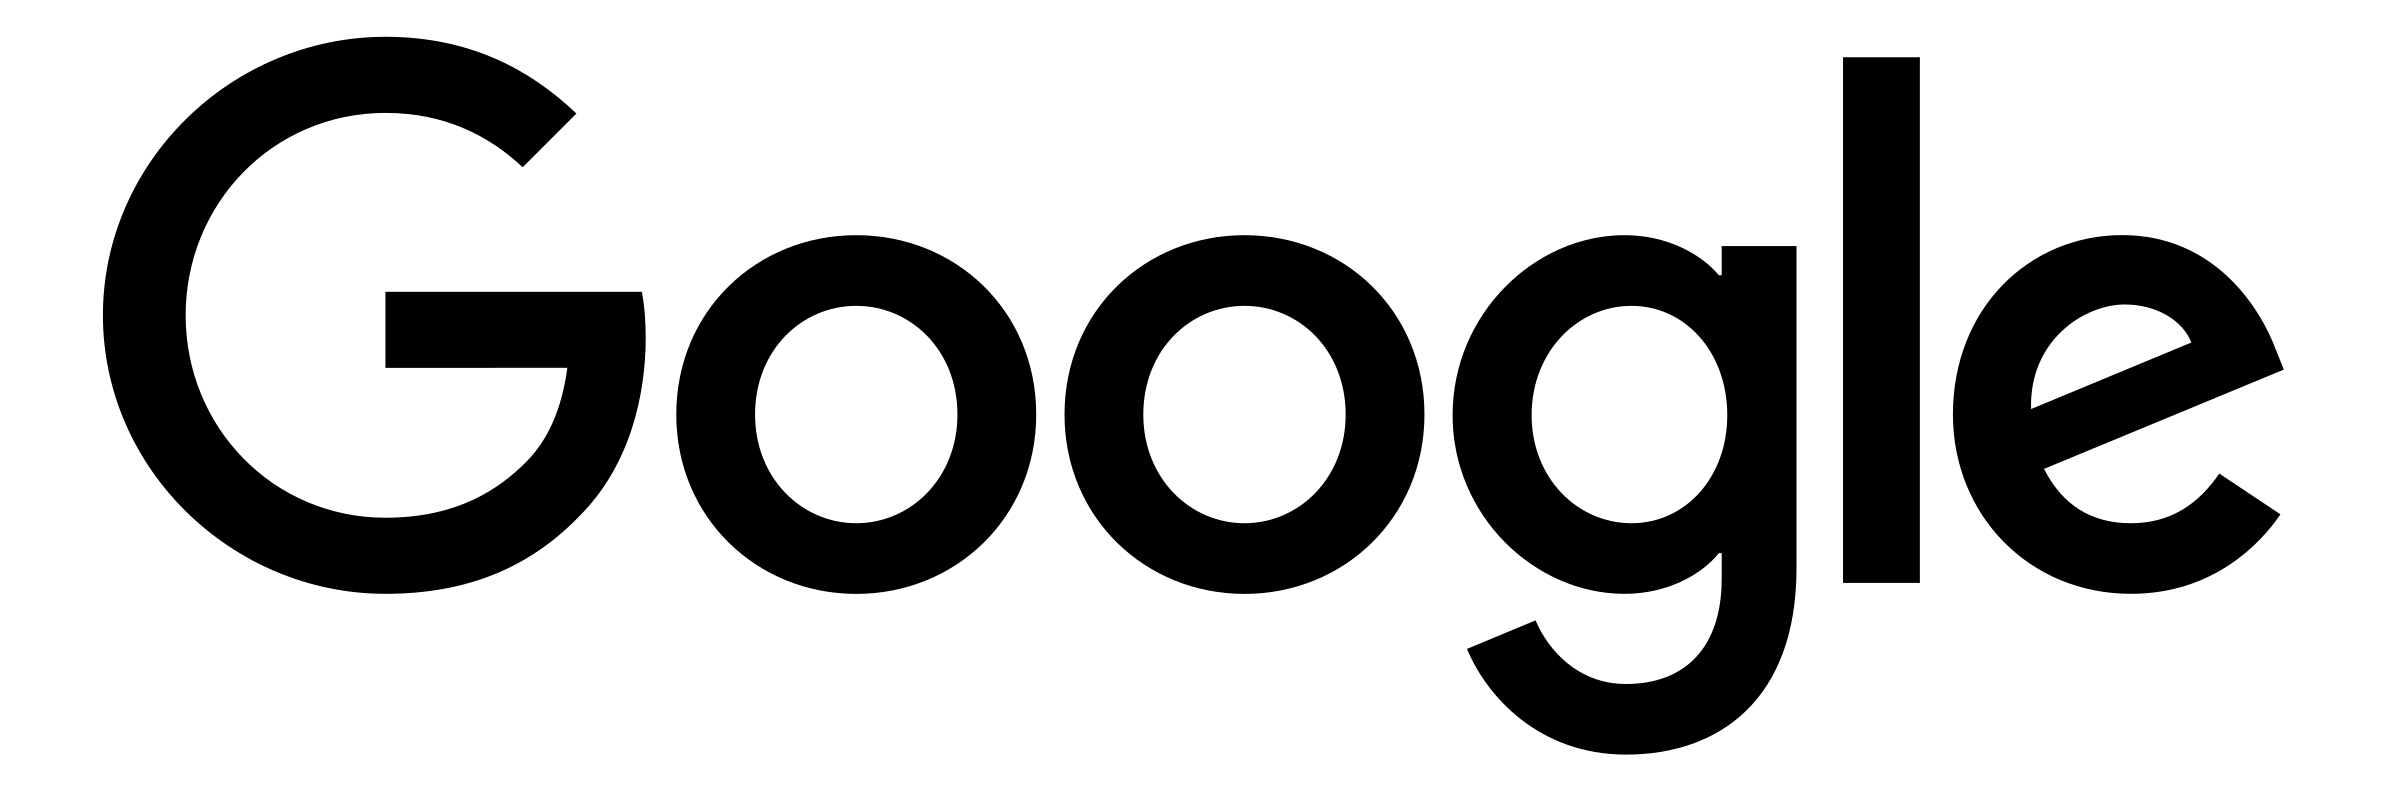 Black Google Logo - google-logo-black-transparent - Enrica Chicchio